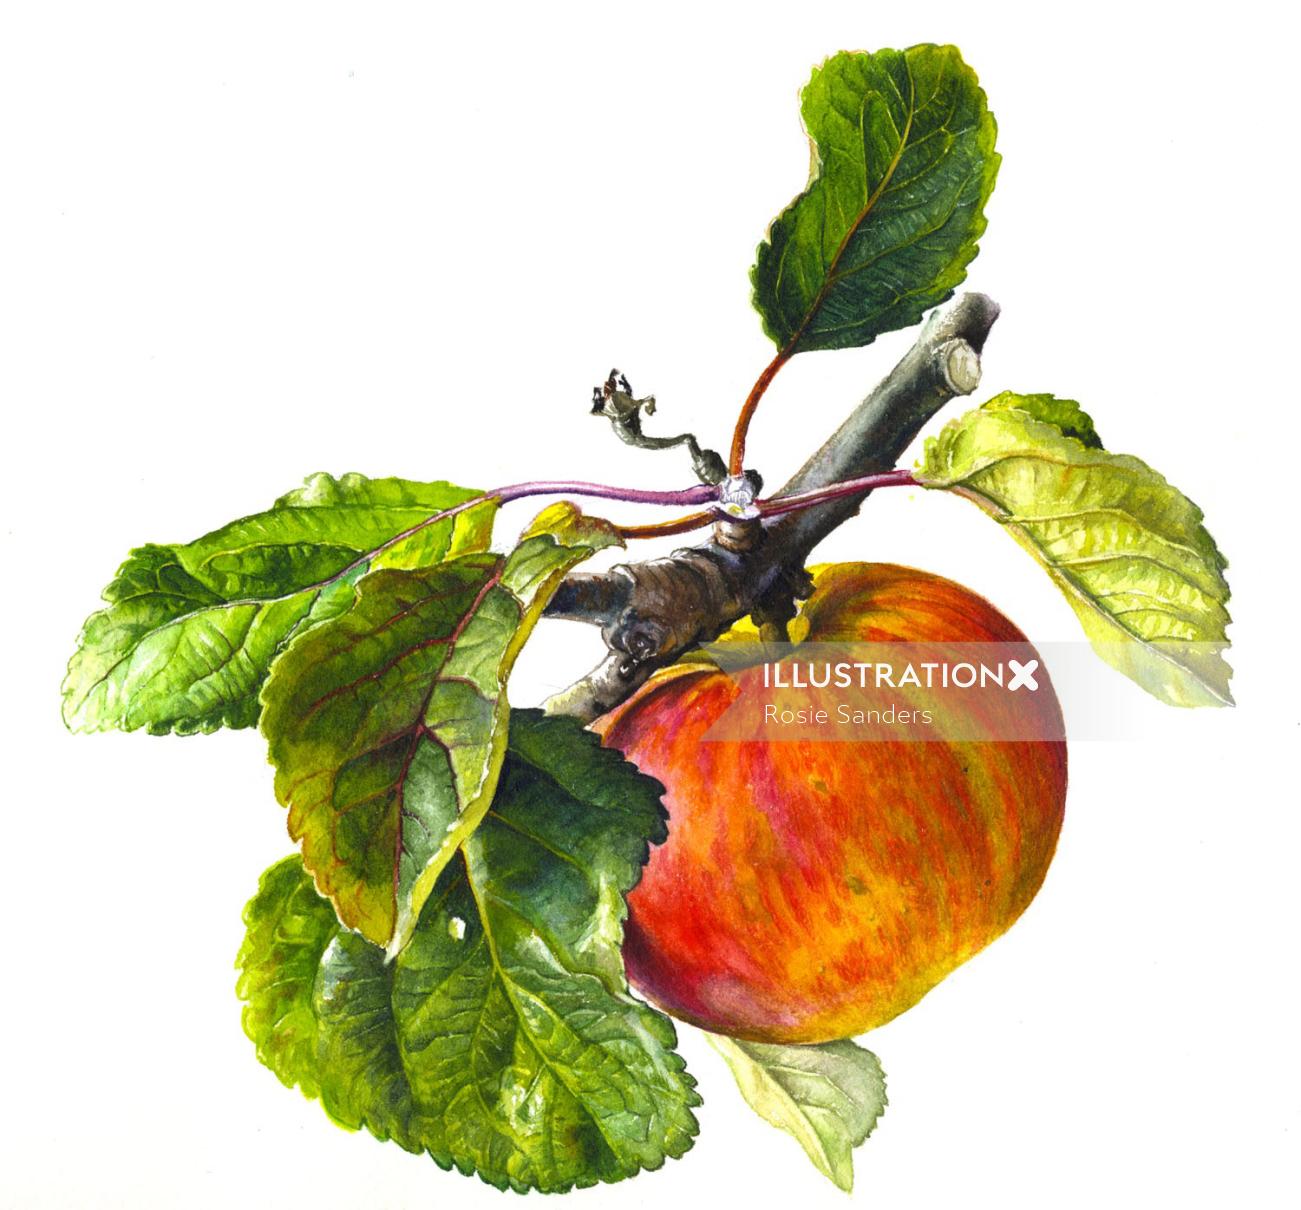 Ilustración de manzana por Rosie Sanders